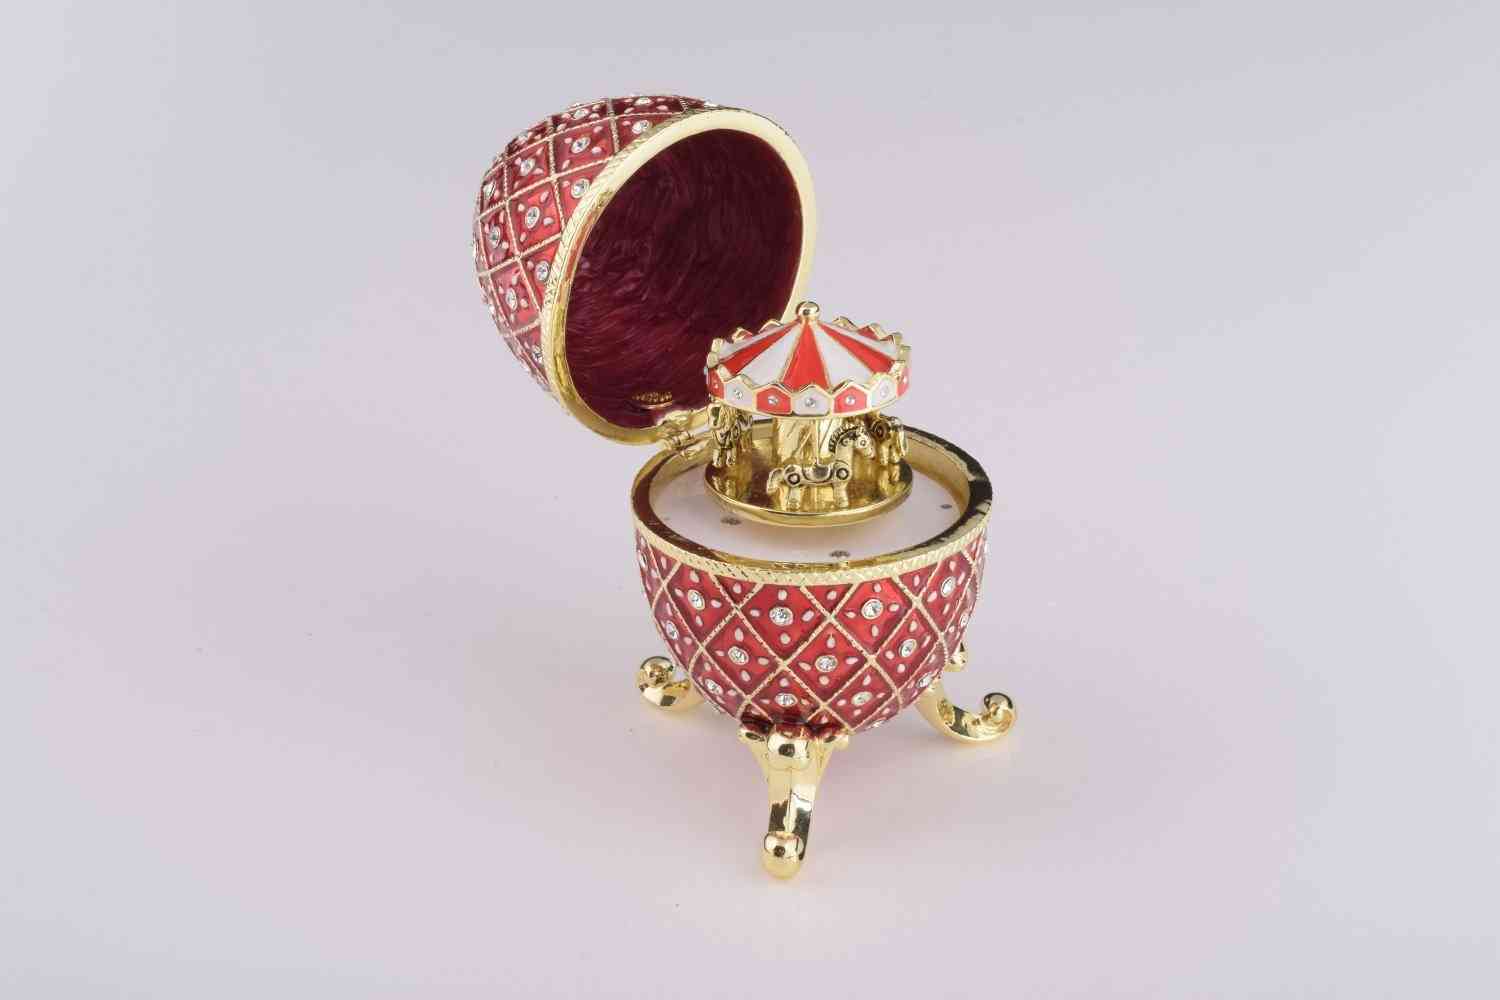 Rotes Faberge-Ei mit Pferdekarussell-Überraschung im Inneren - Schmuckkästchen